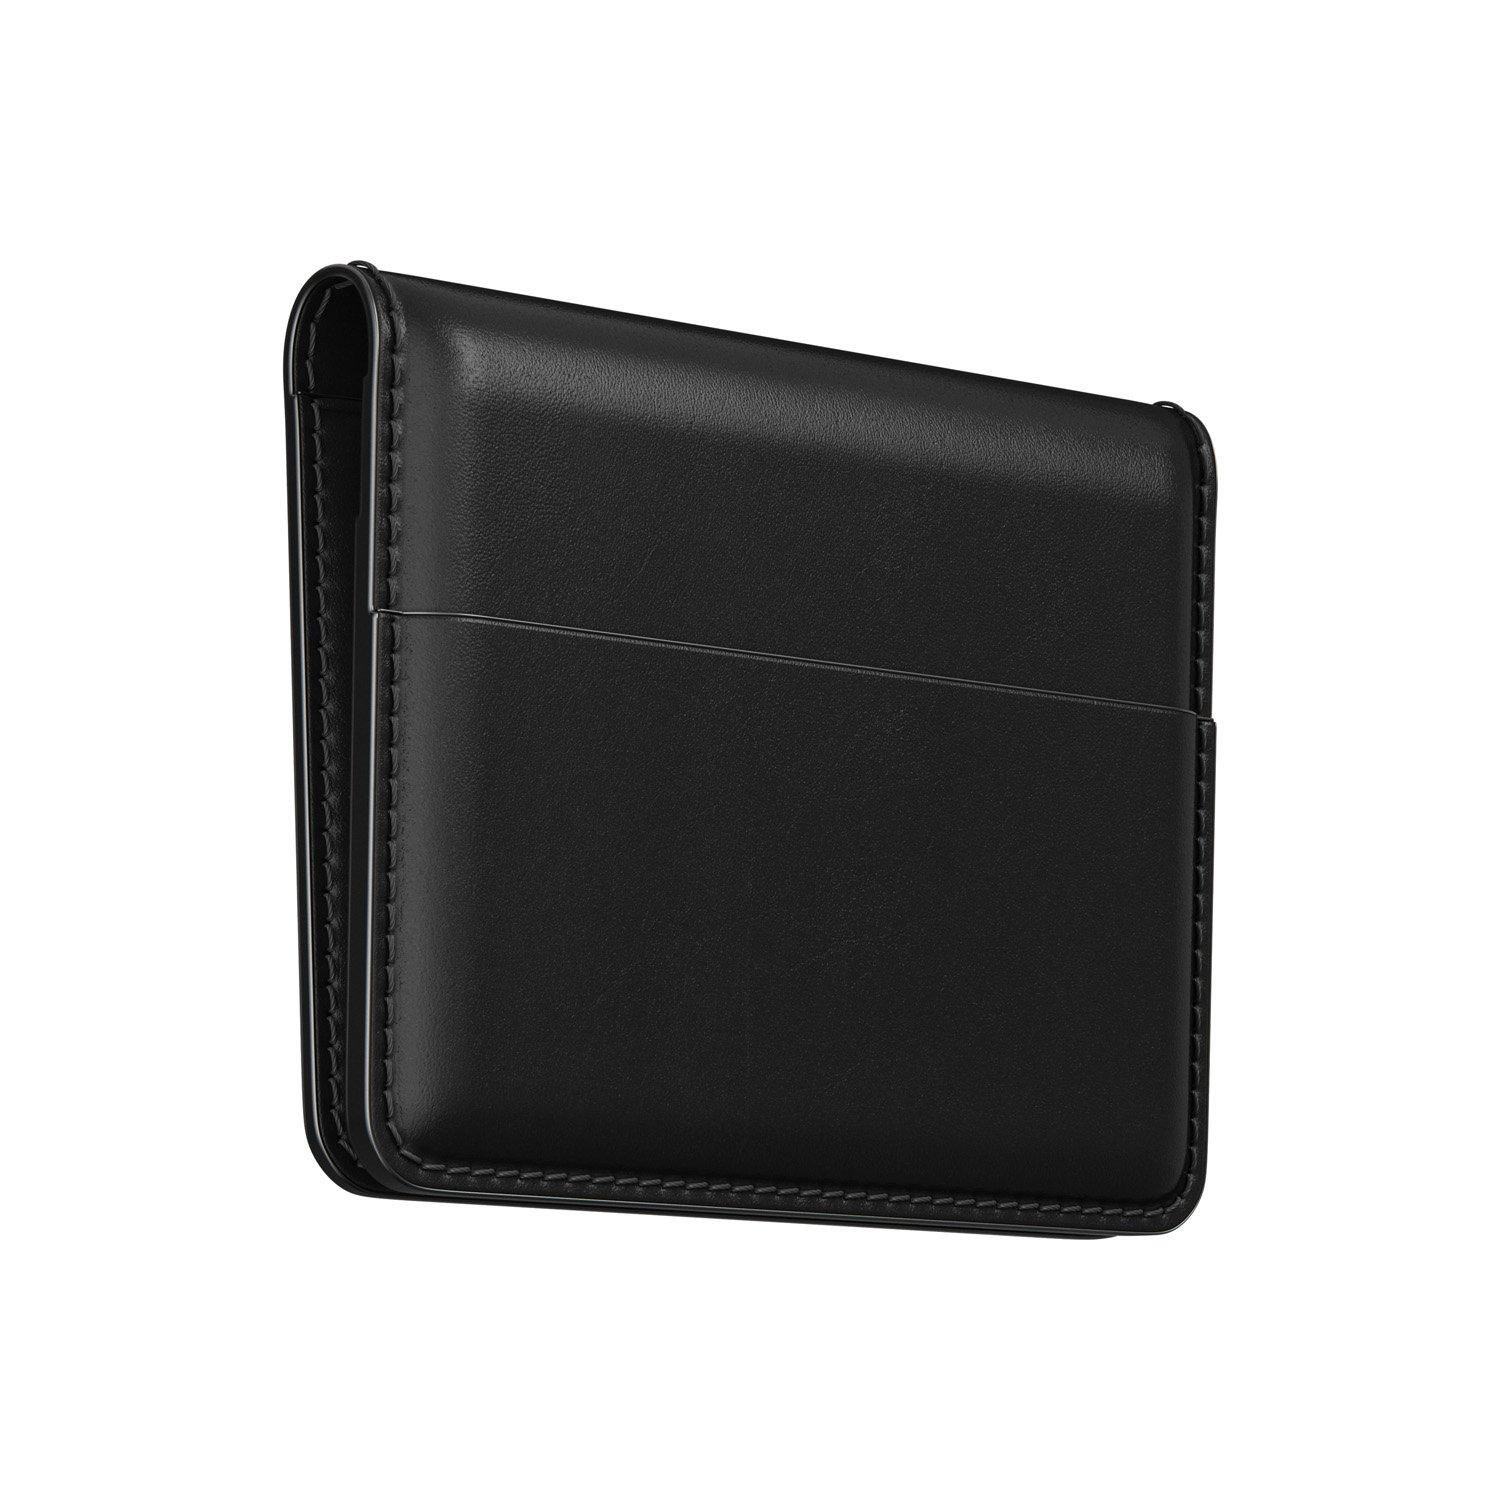 Nomad Horween Leather Card Wallet Plus, Black Default Nomad 